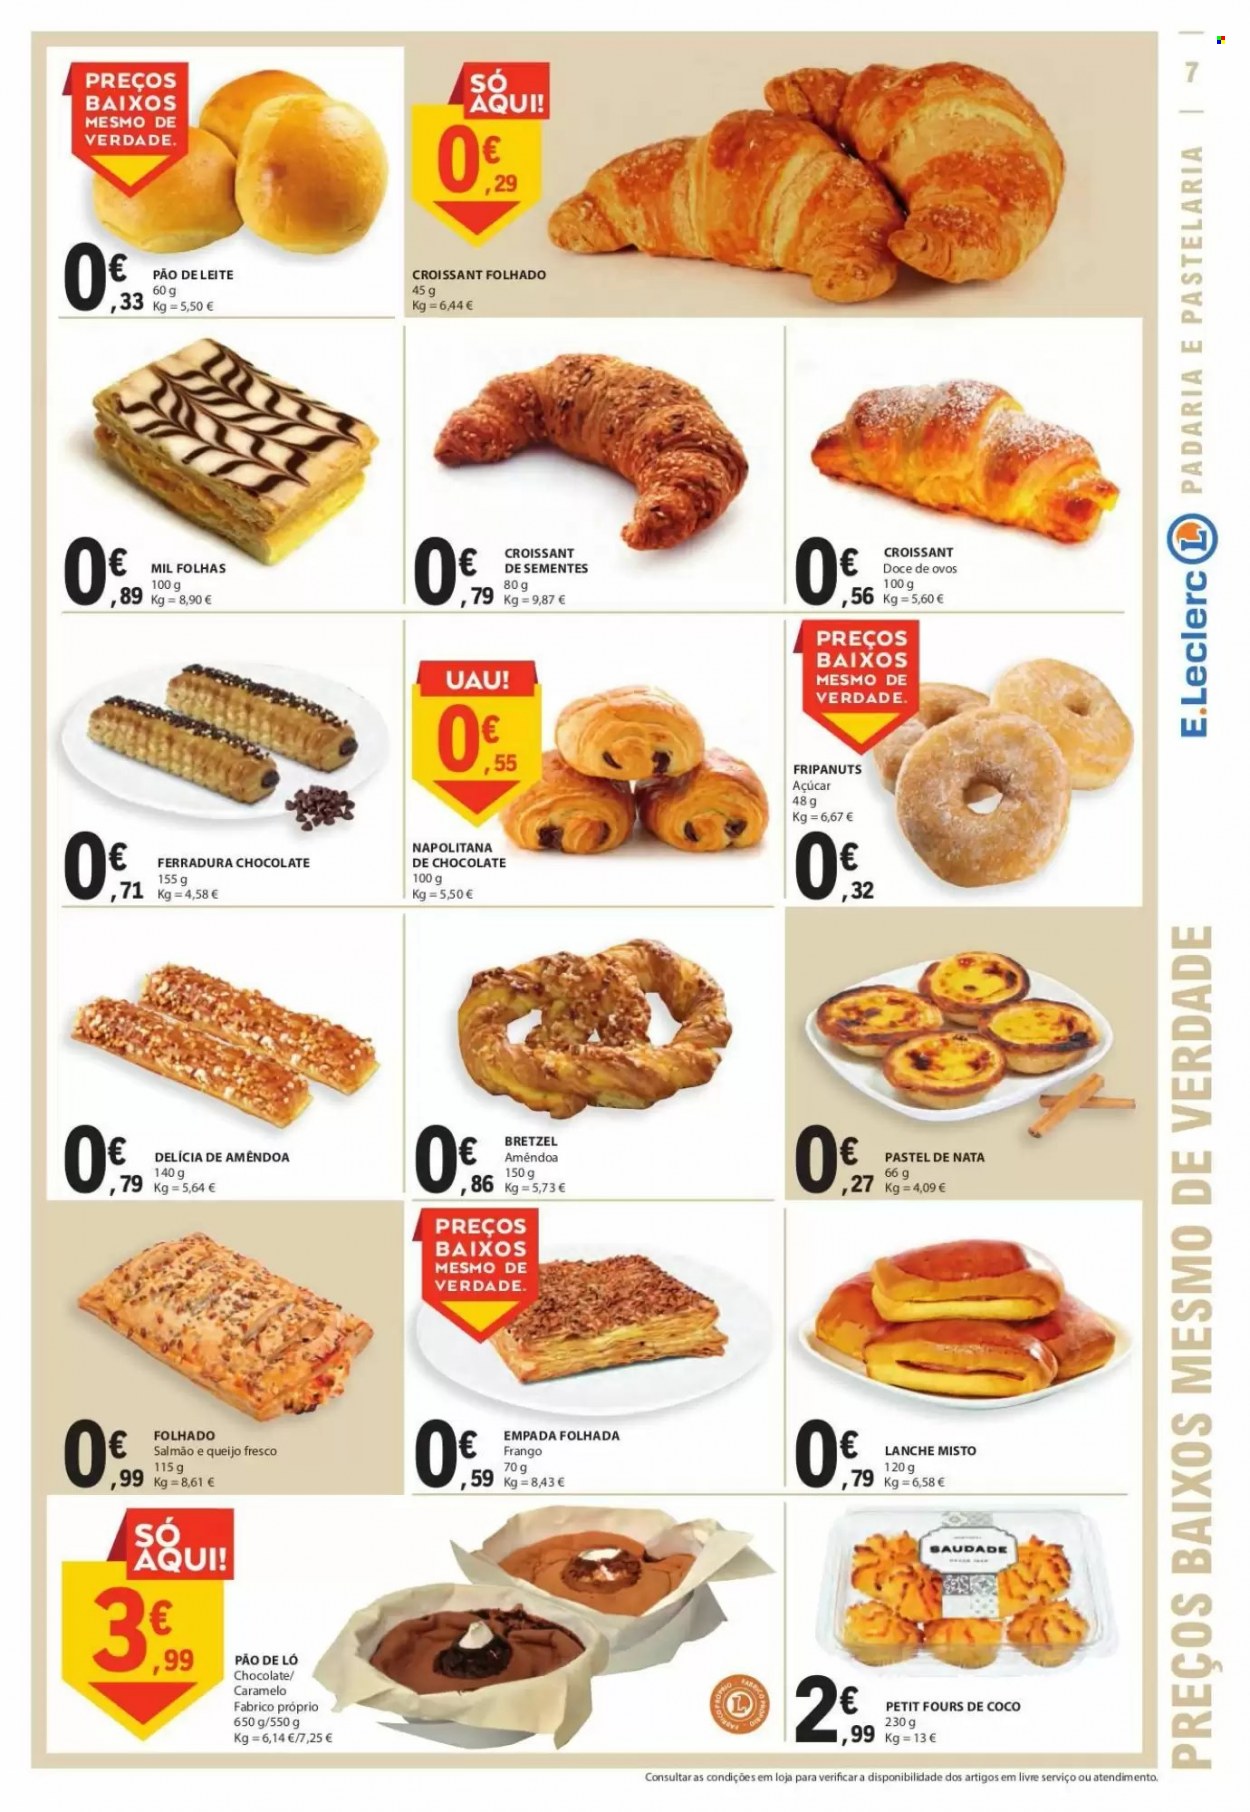 thumbnail - Folheto E.Leclerc - 4.8.2022 - 10.8.2022 - Produtos em promoção - pretzels, croissant, pão de ló, tarte de nata, pão de leite, frango, queijo fresco, açúcar. Página 7.